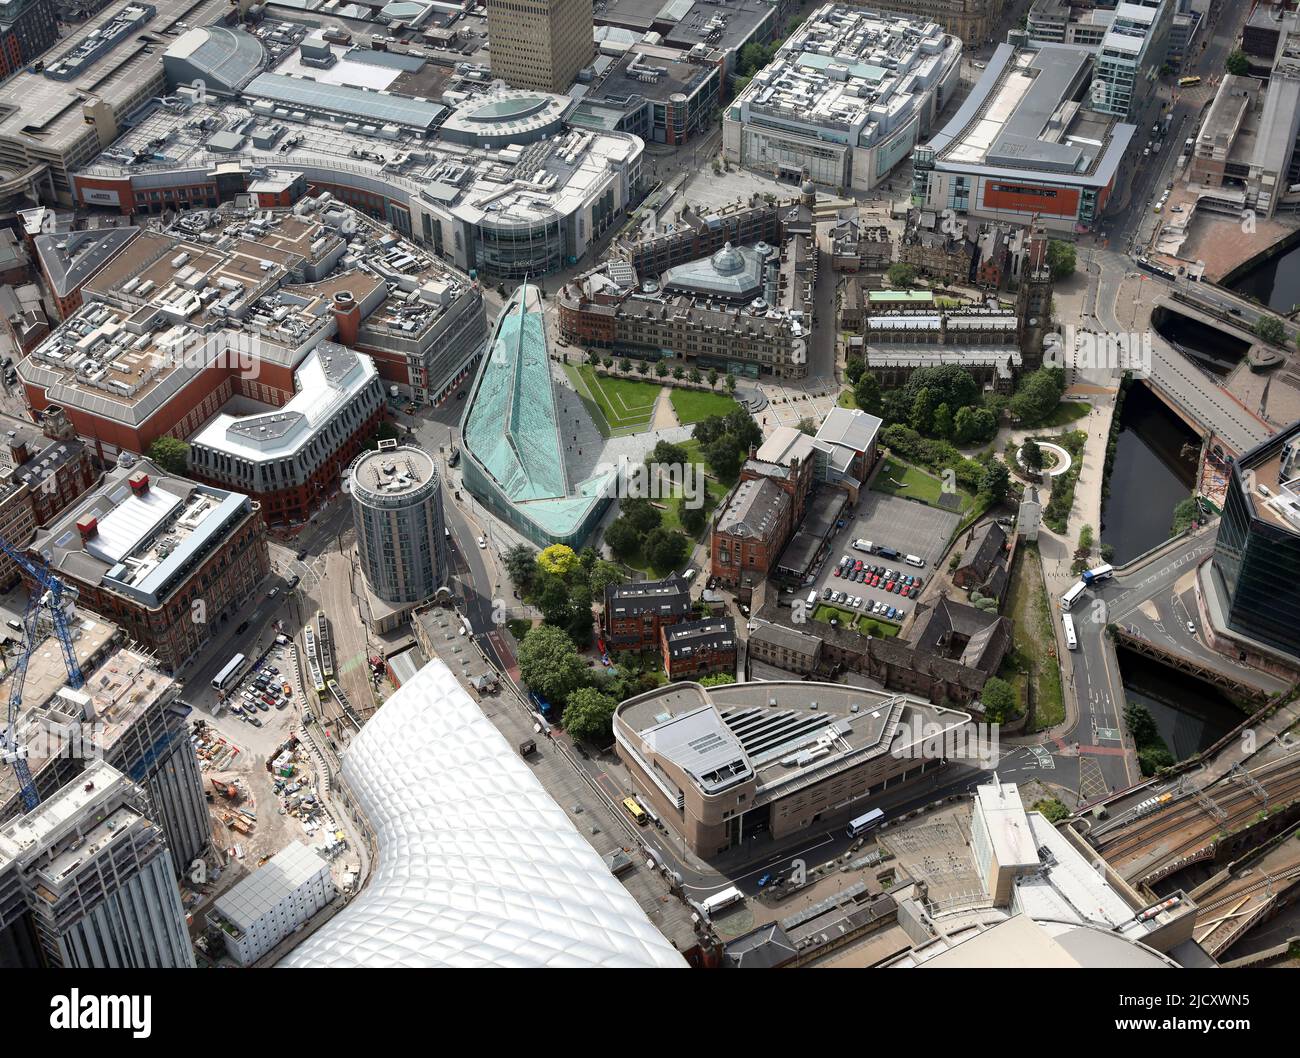 Vue aérienne du centre-ville de Manchester : jardins de la cathédrale, musée national du football (bldg vert), cathédrale de Manchester et parc commémoratif de la Glade of Light Banque D'Images